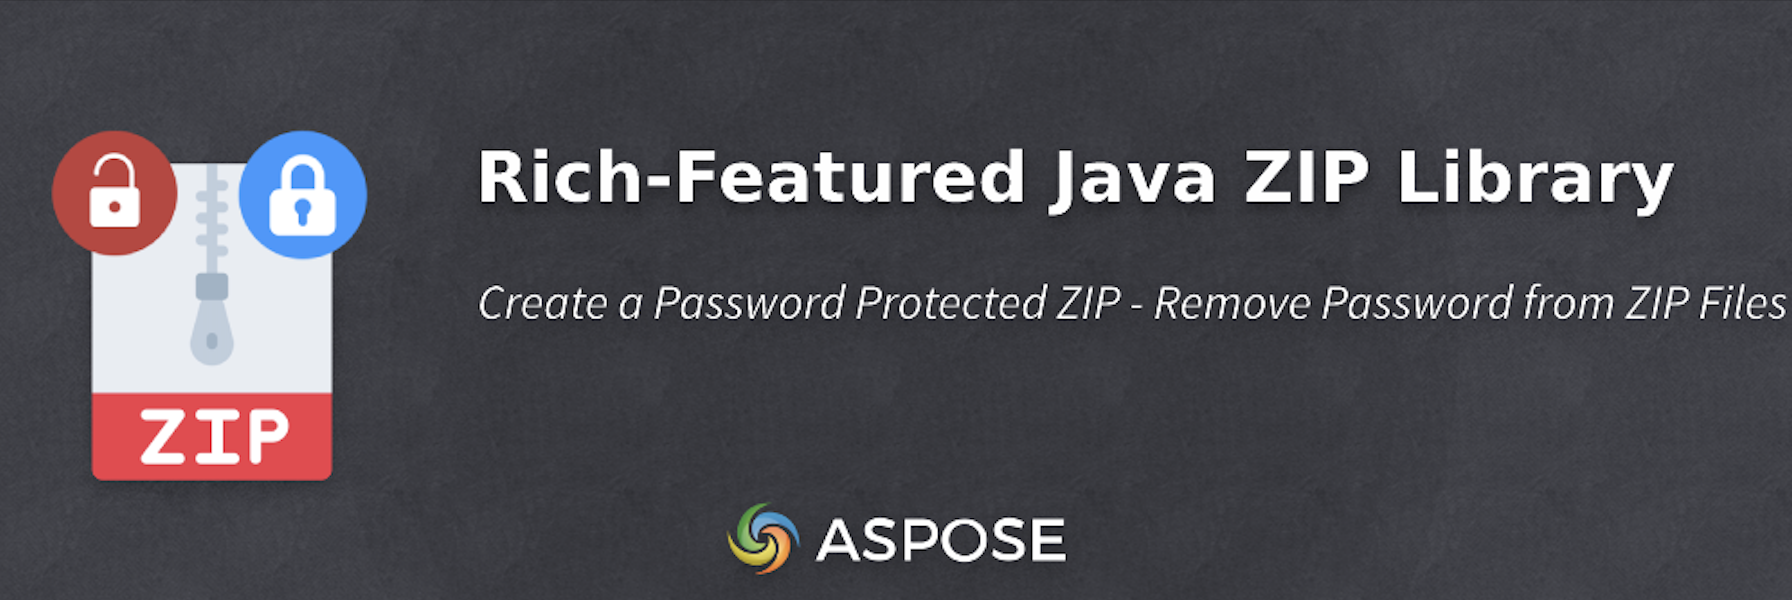 Crie um ZIP protegido por senha usando Java ZIP API